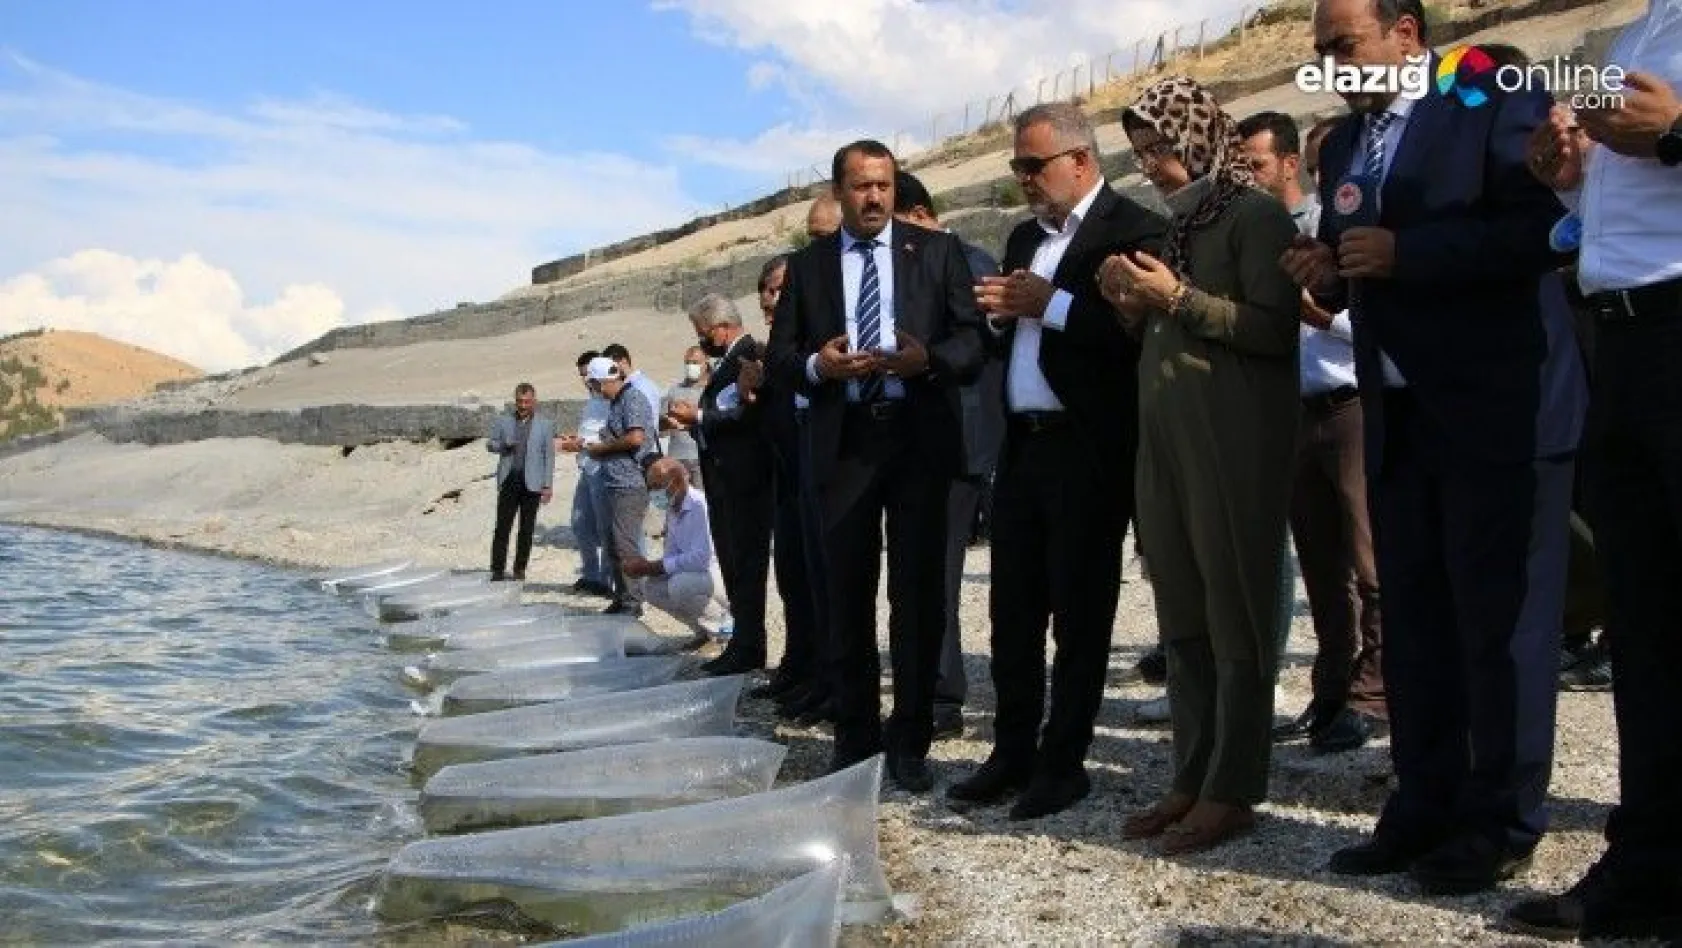 Elazığ'da bu sene 12 milyon yavru sazan sularla buluşturuldu